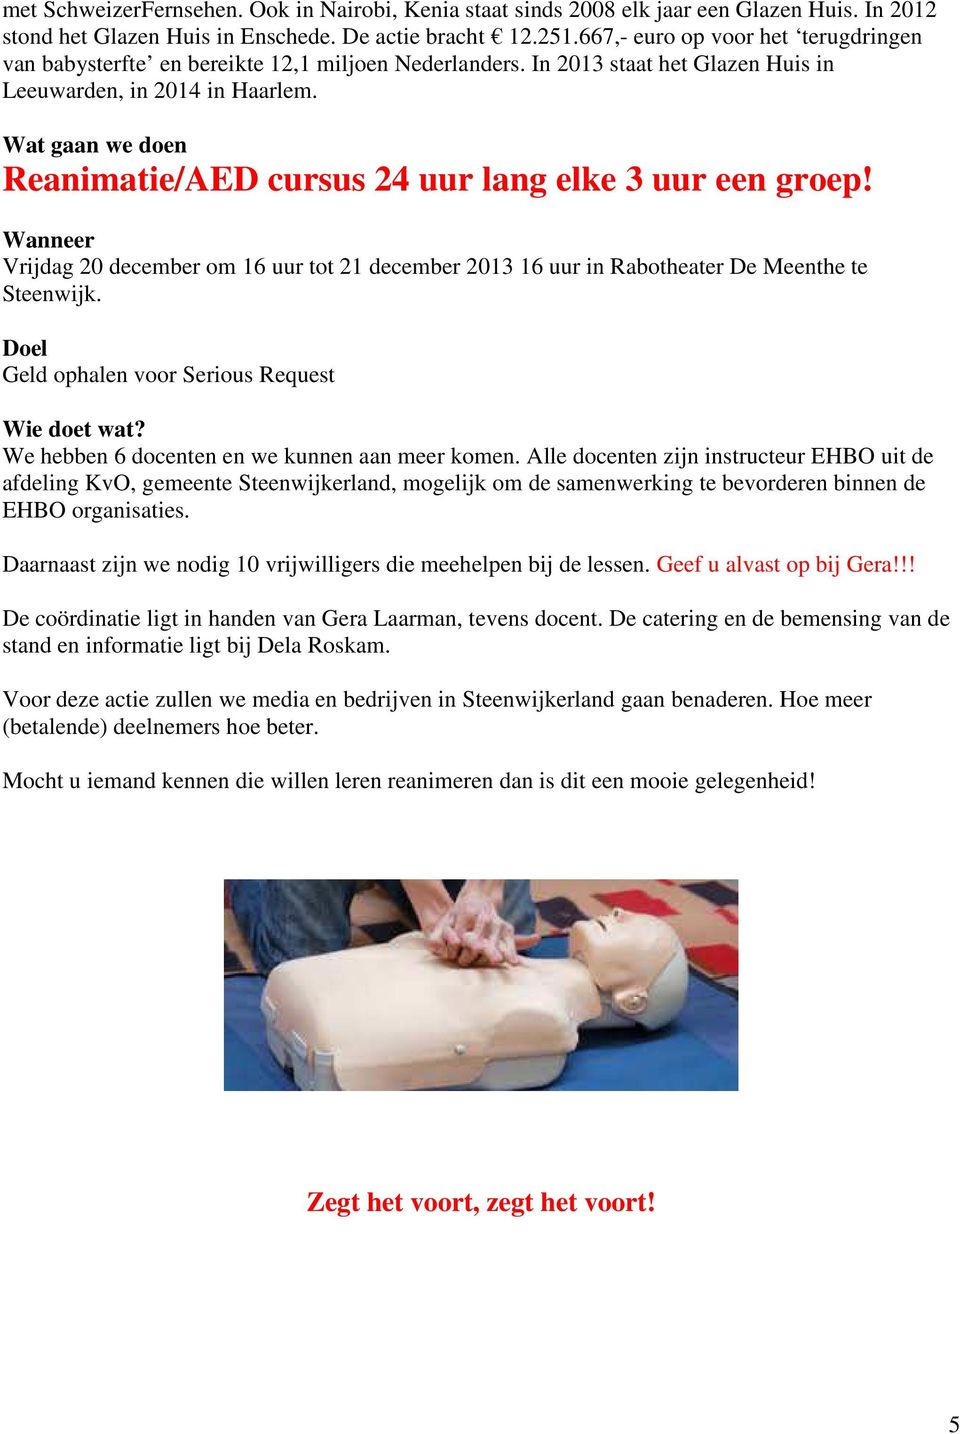 Wat gaan we doen Reanimatie/AED cursus 24 uur lang elke 3 uur een groep! Wanneer Vrijdag 20 december om 16 uur tot 21 december 2013 16 uur in Rabotheater De Meenthe te Steenwijk.